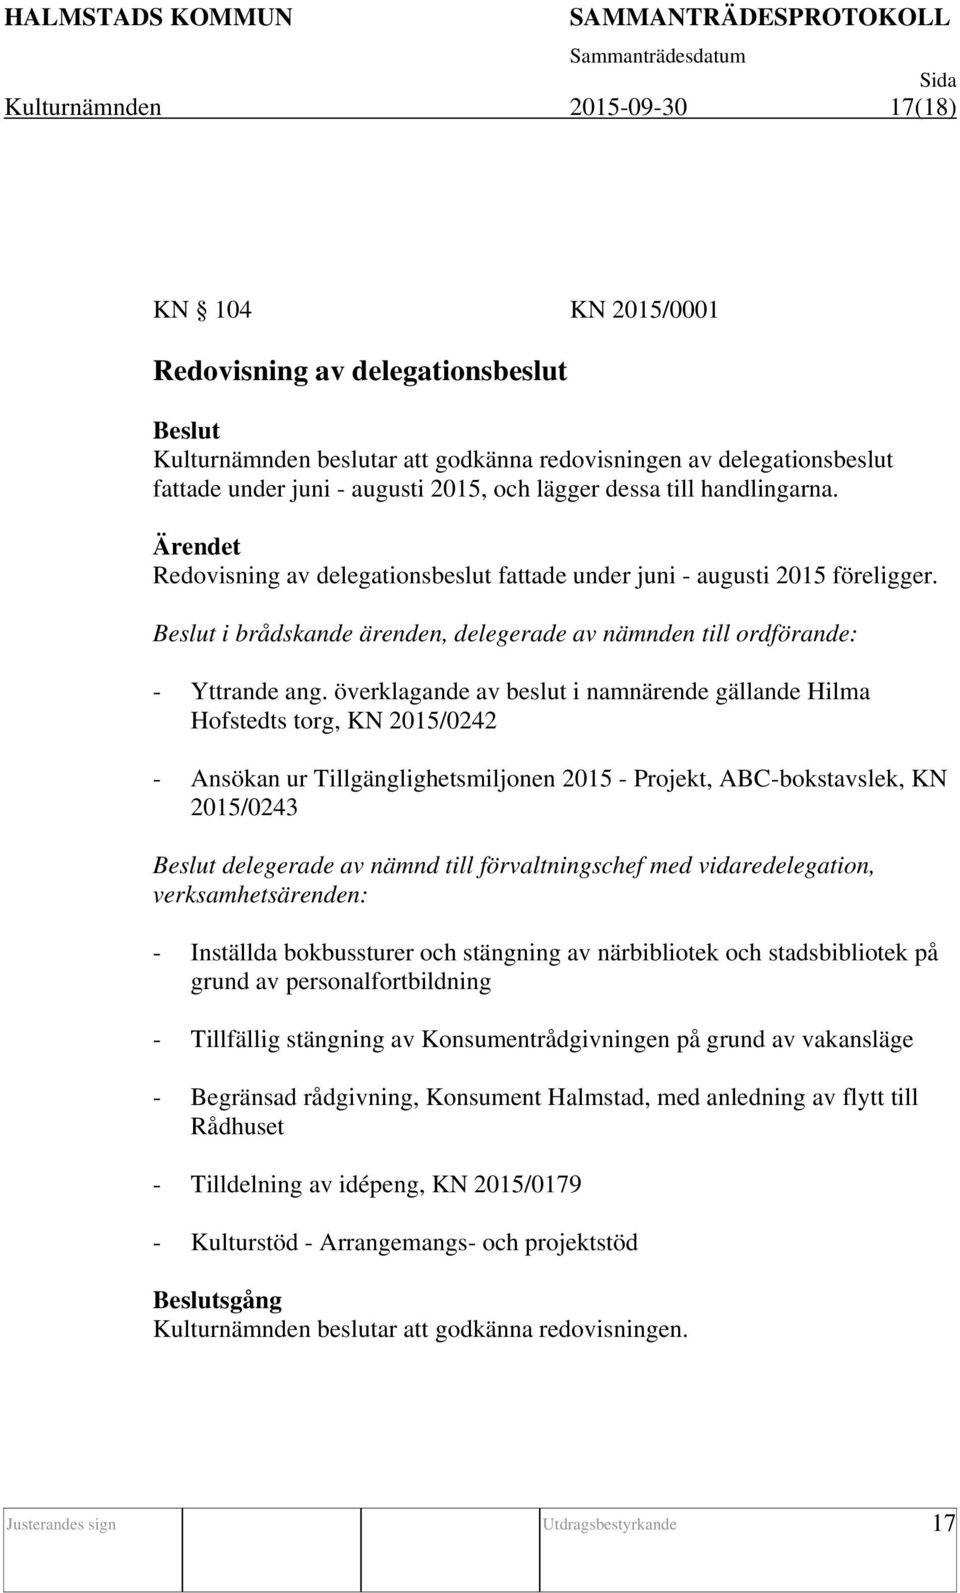 överklagande av beslut i namnärende gällande Hilma Hofstedts torg, KN 2015/0242 - Ansökan ur Tillgänglighetsmiljonen 2015 - Projekt, ABC-bokstavslek, KN 2015/0243 delegerade av nämnd till